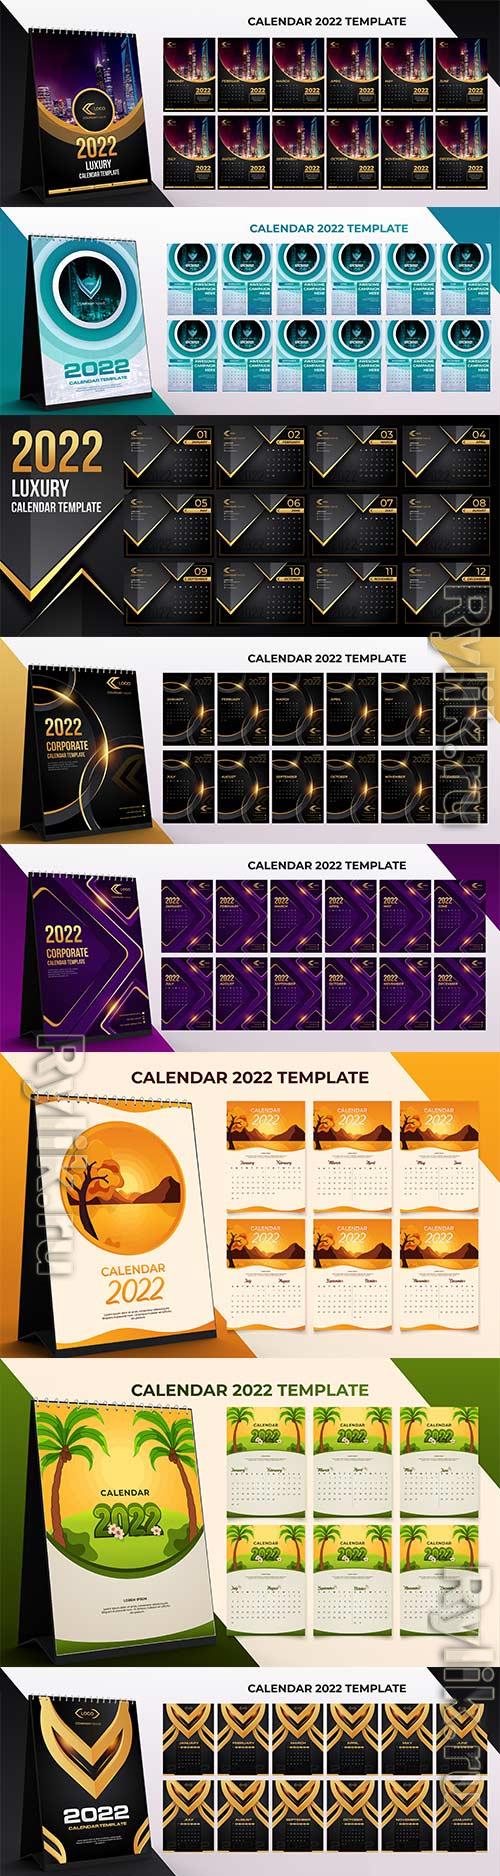 Настольный календарь на 2022 год, набор шаблонов на 12 месяцев, календари в векторе